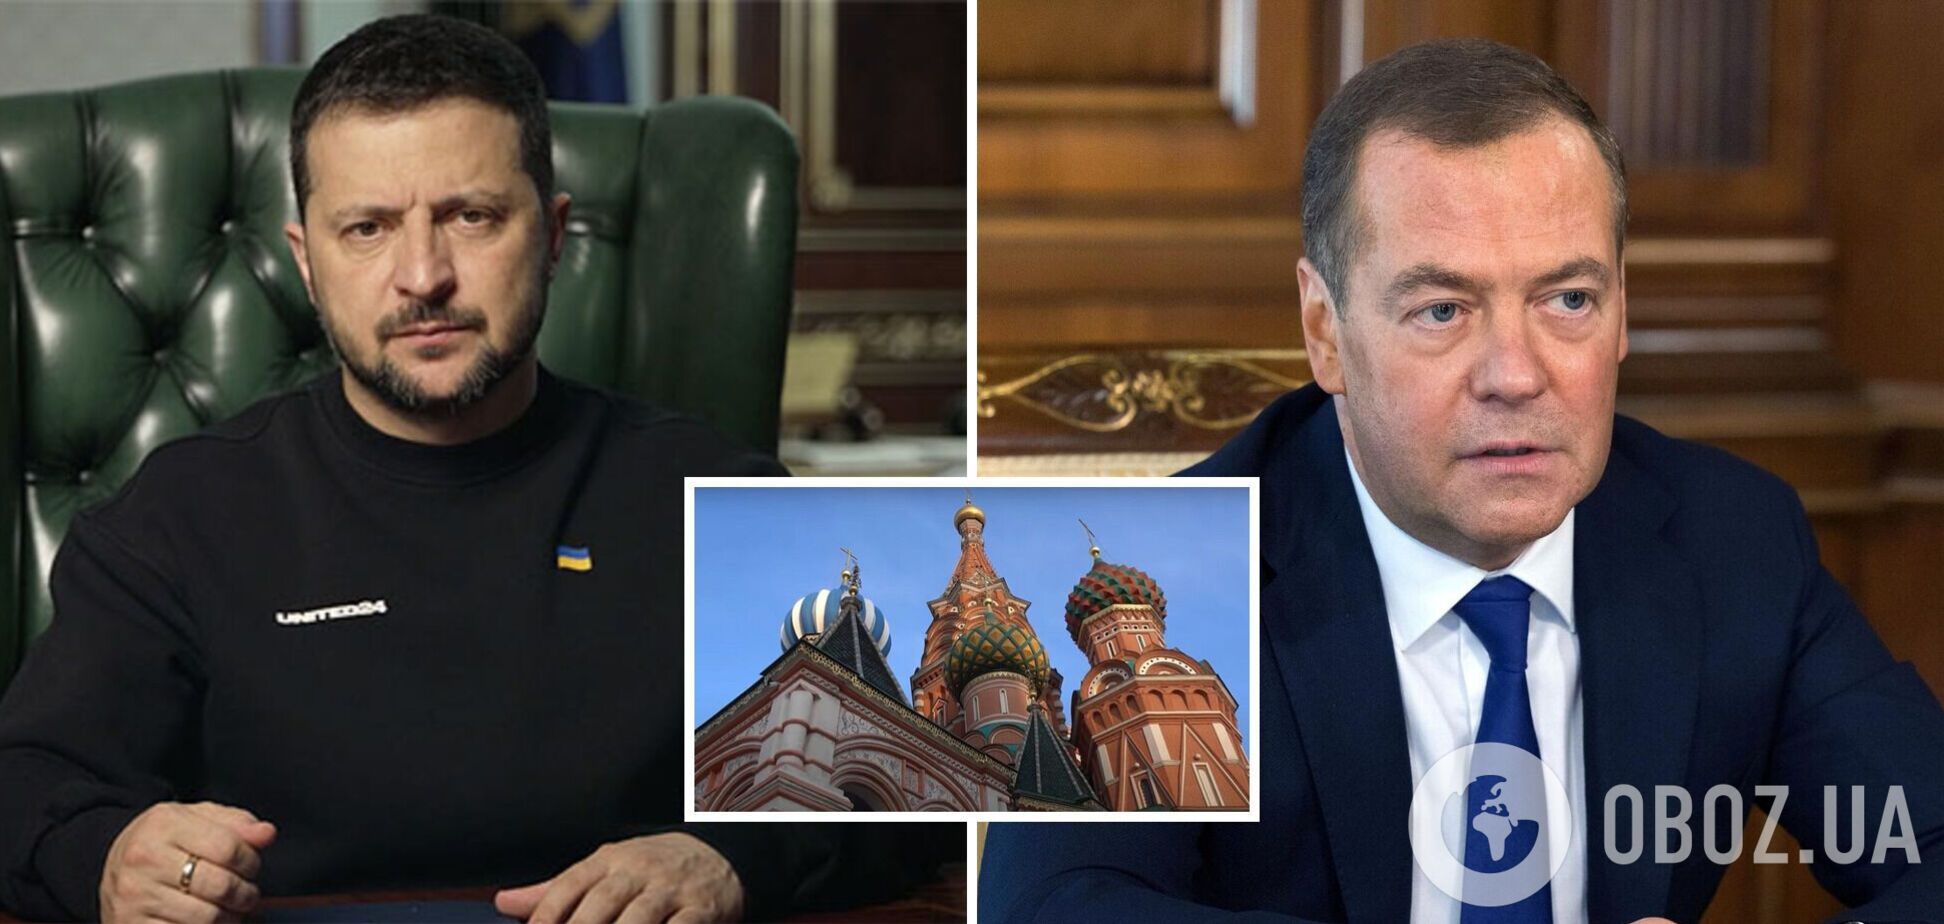 'Своей смертью не кончат': Зеленский высказался о судьбе руководителей РФ, Медведев устроил истерику